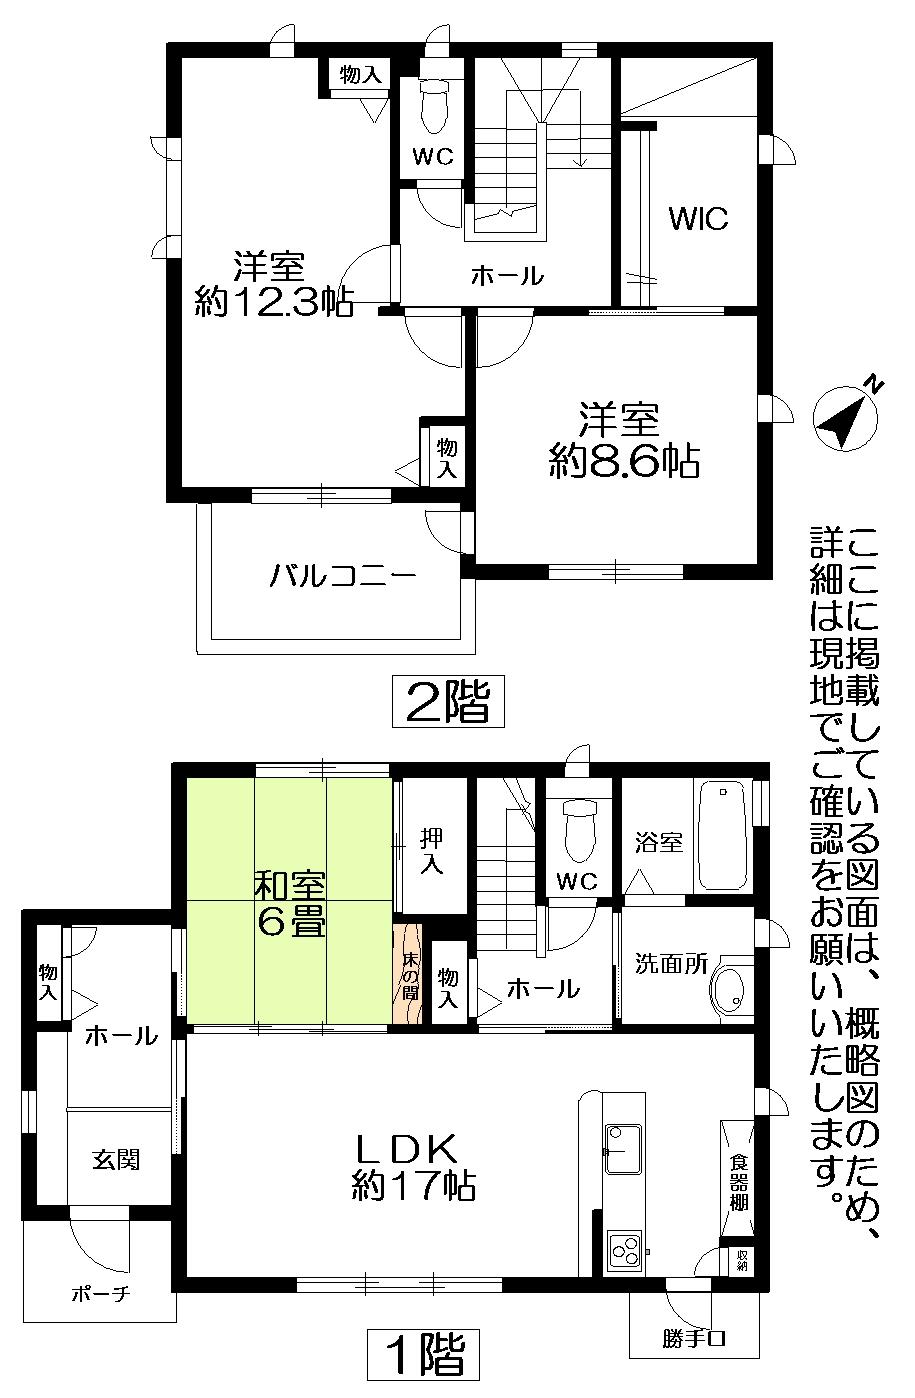 Floor plan. 25,800,000 yen, 3LDK + S (storeroom), Land area 226.04 sq m , Building area 117.92 sq m